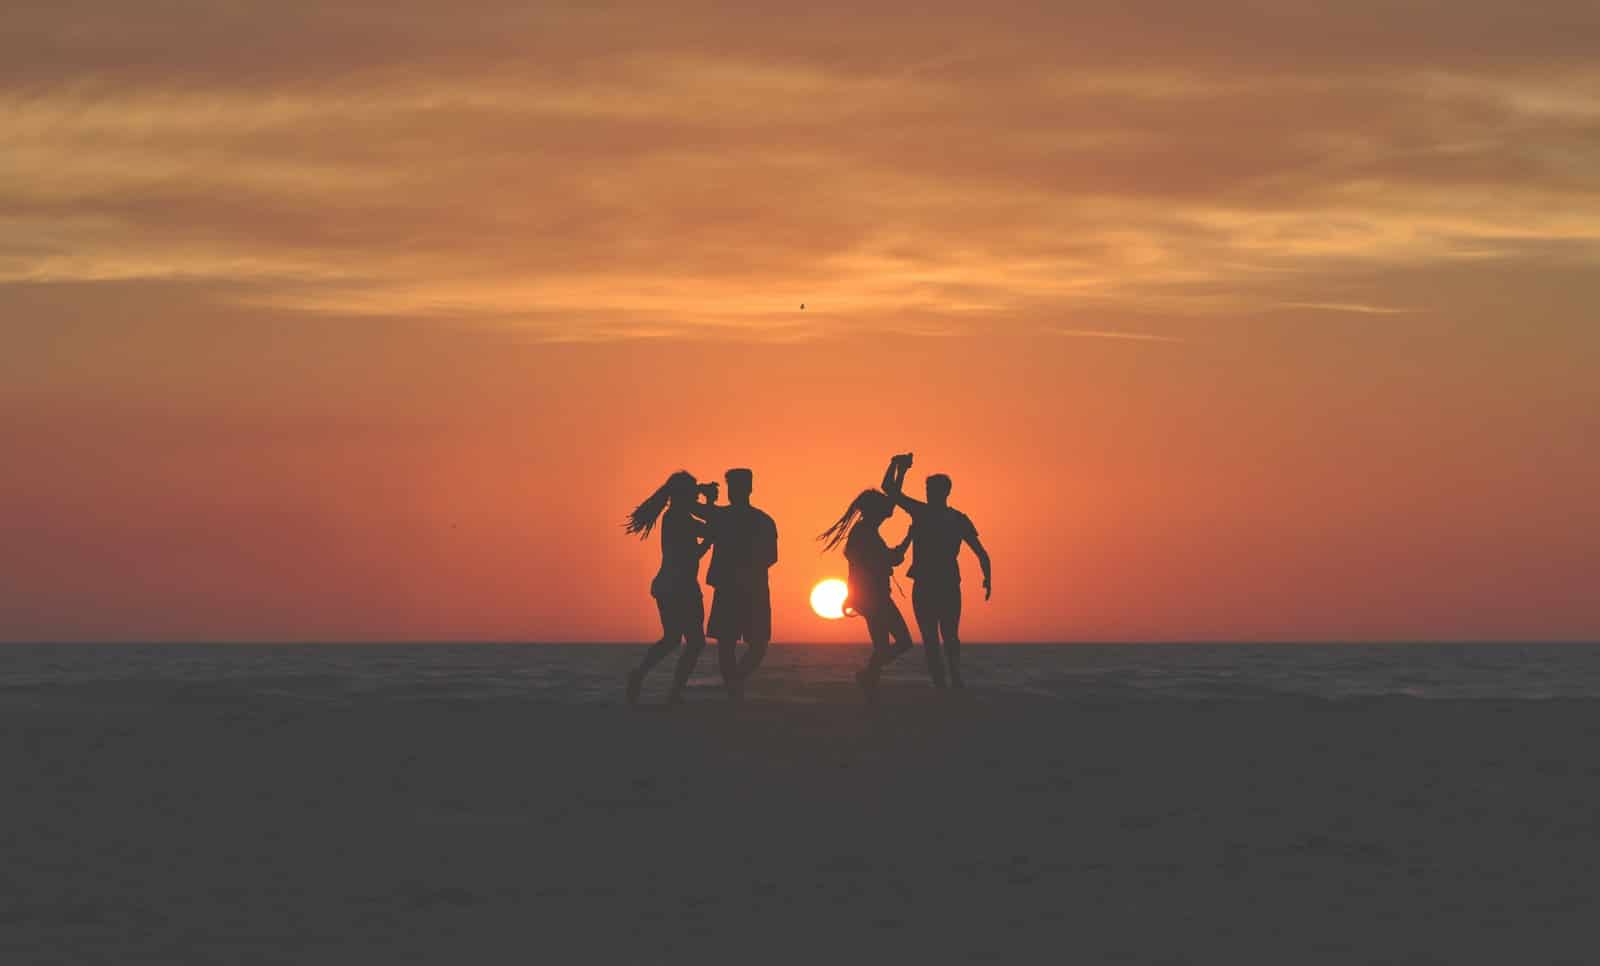 zdjęcie sylwetki czterech osób tańczących na piaskach w pobliżu linii brzegowej